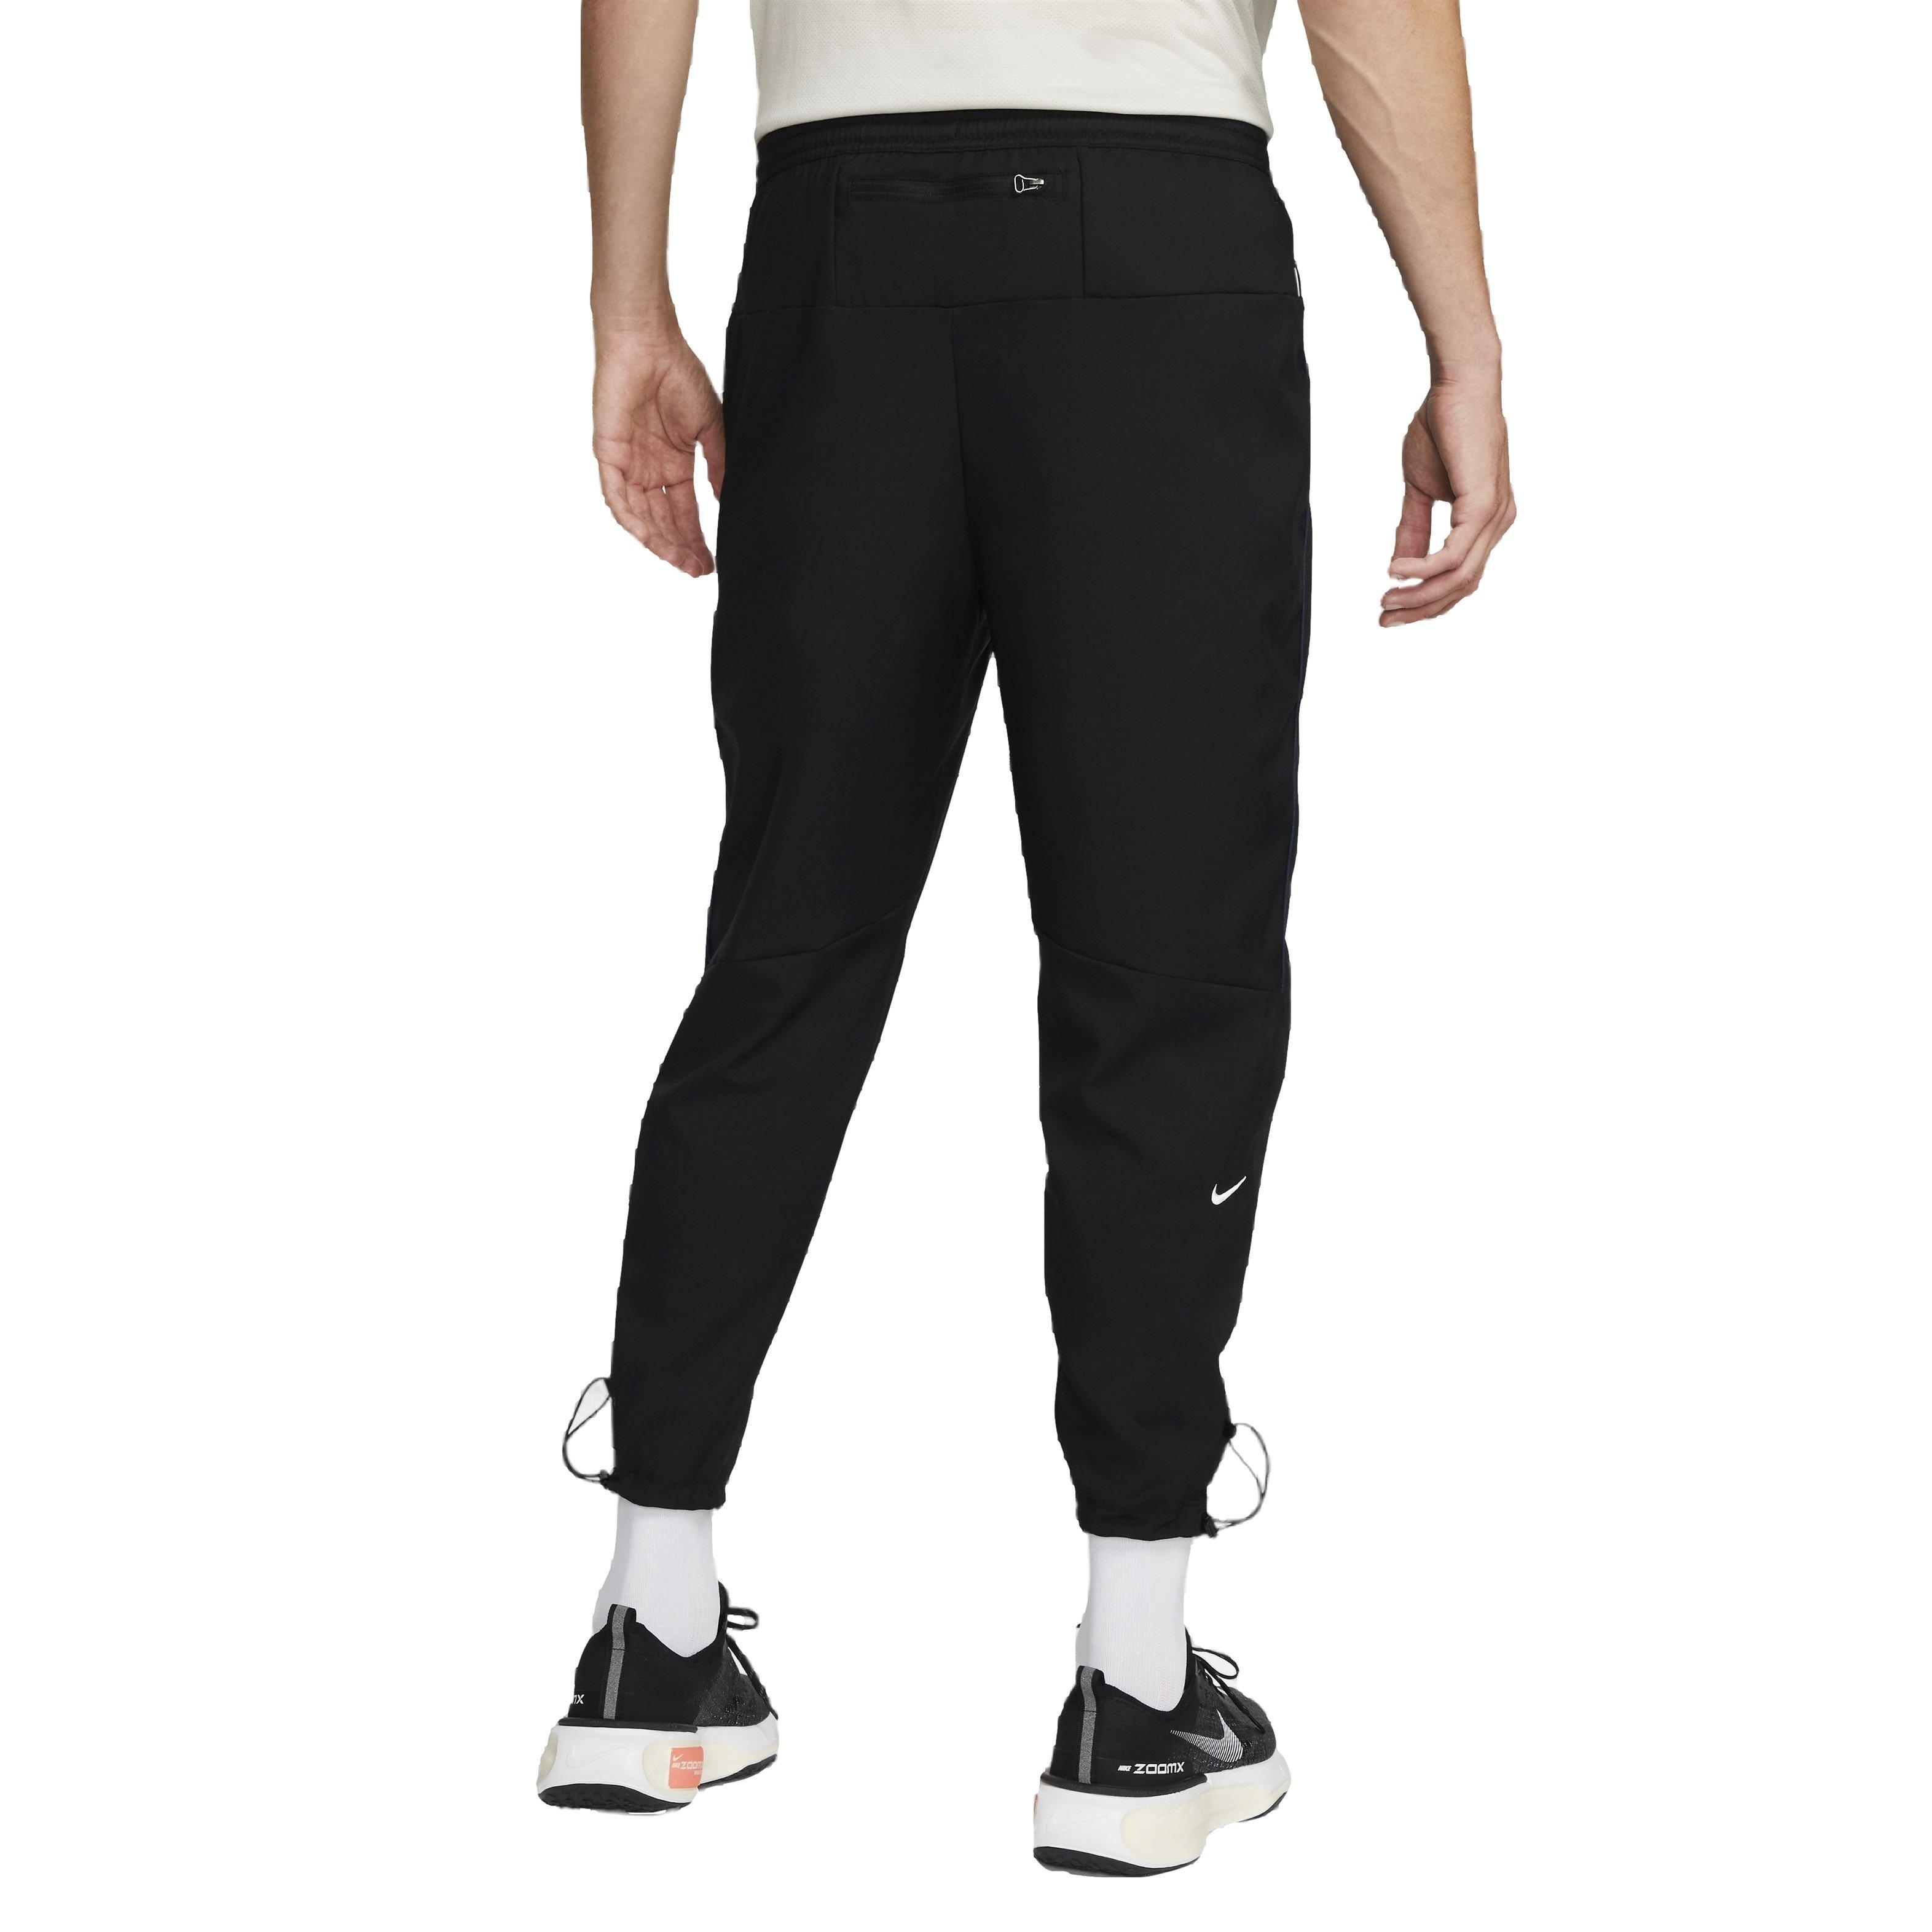 Nike Women's Dri-FIT Essential Pants - Hibbett